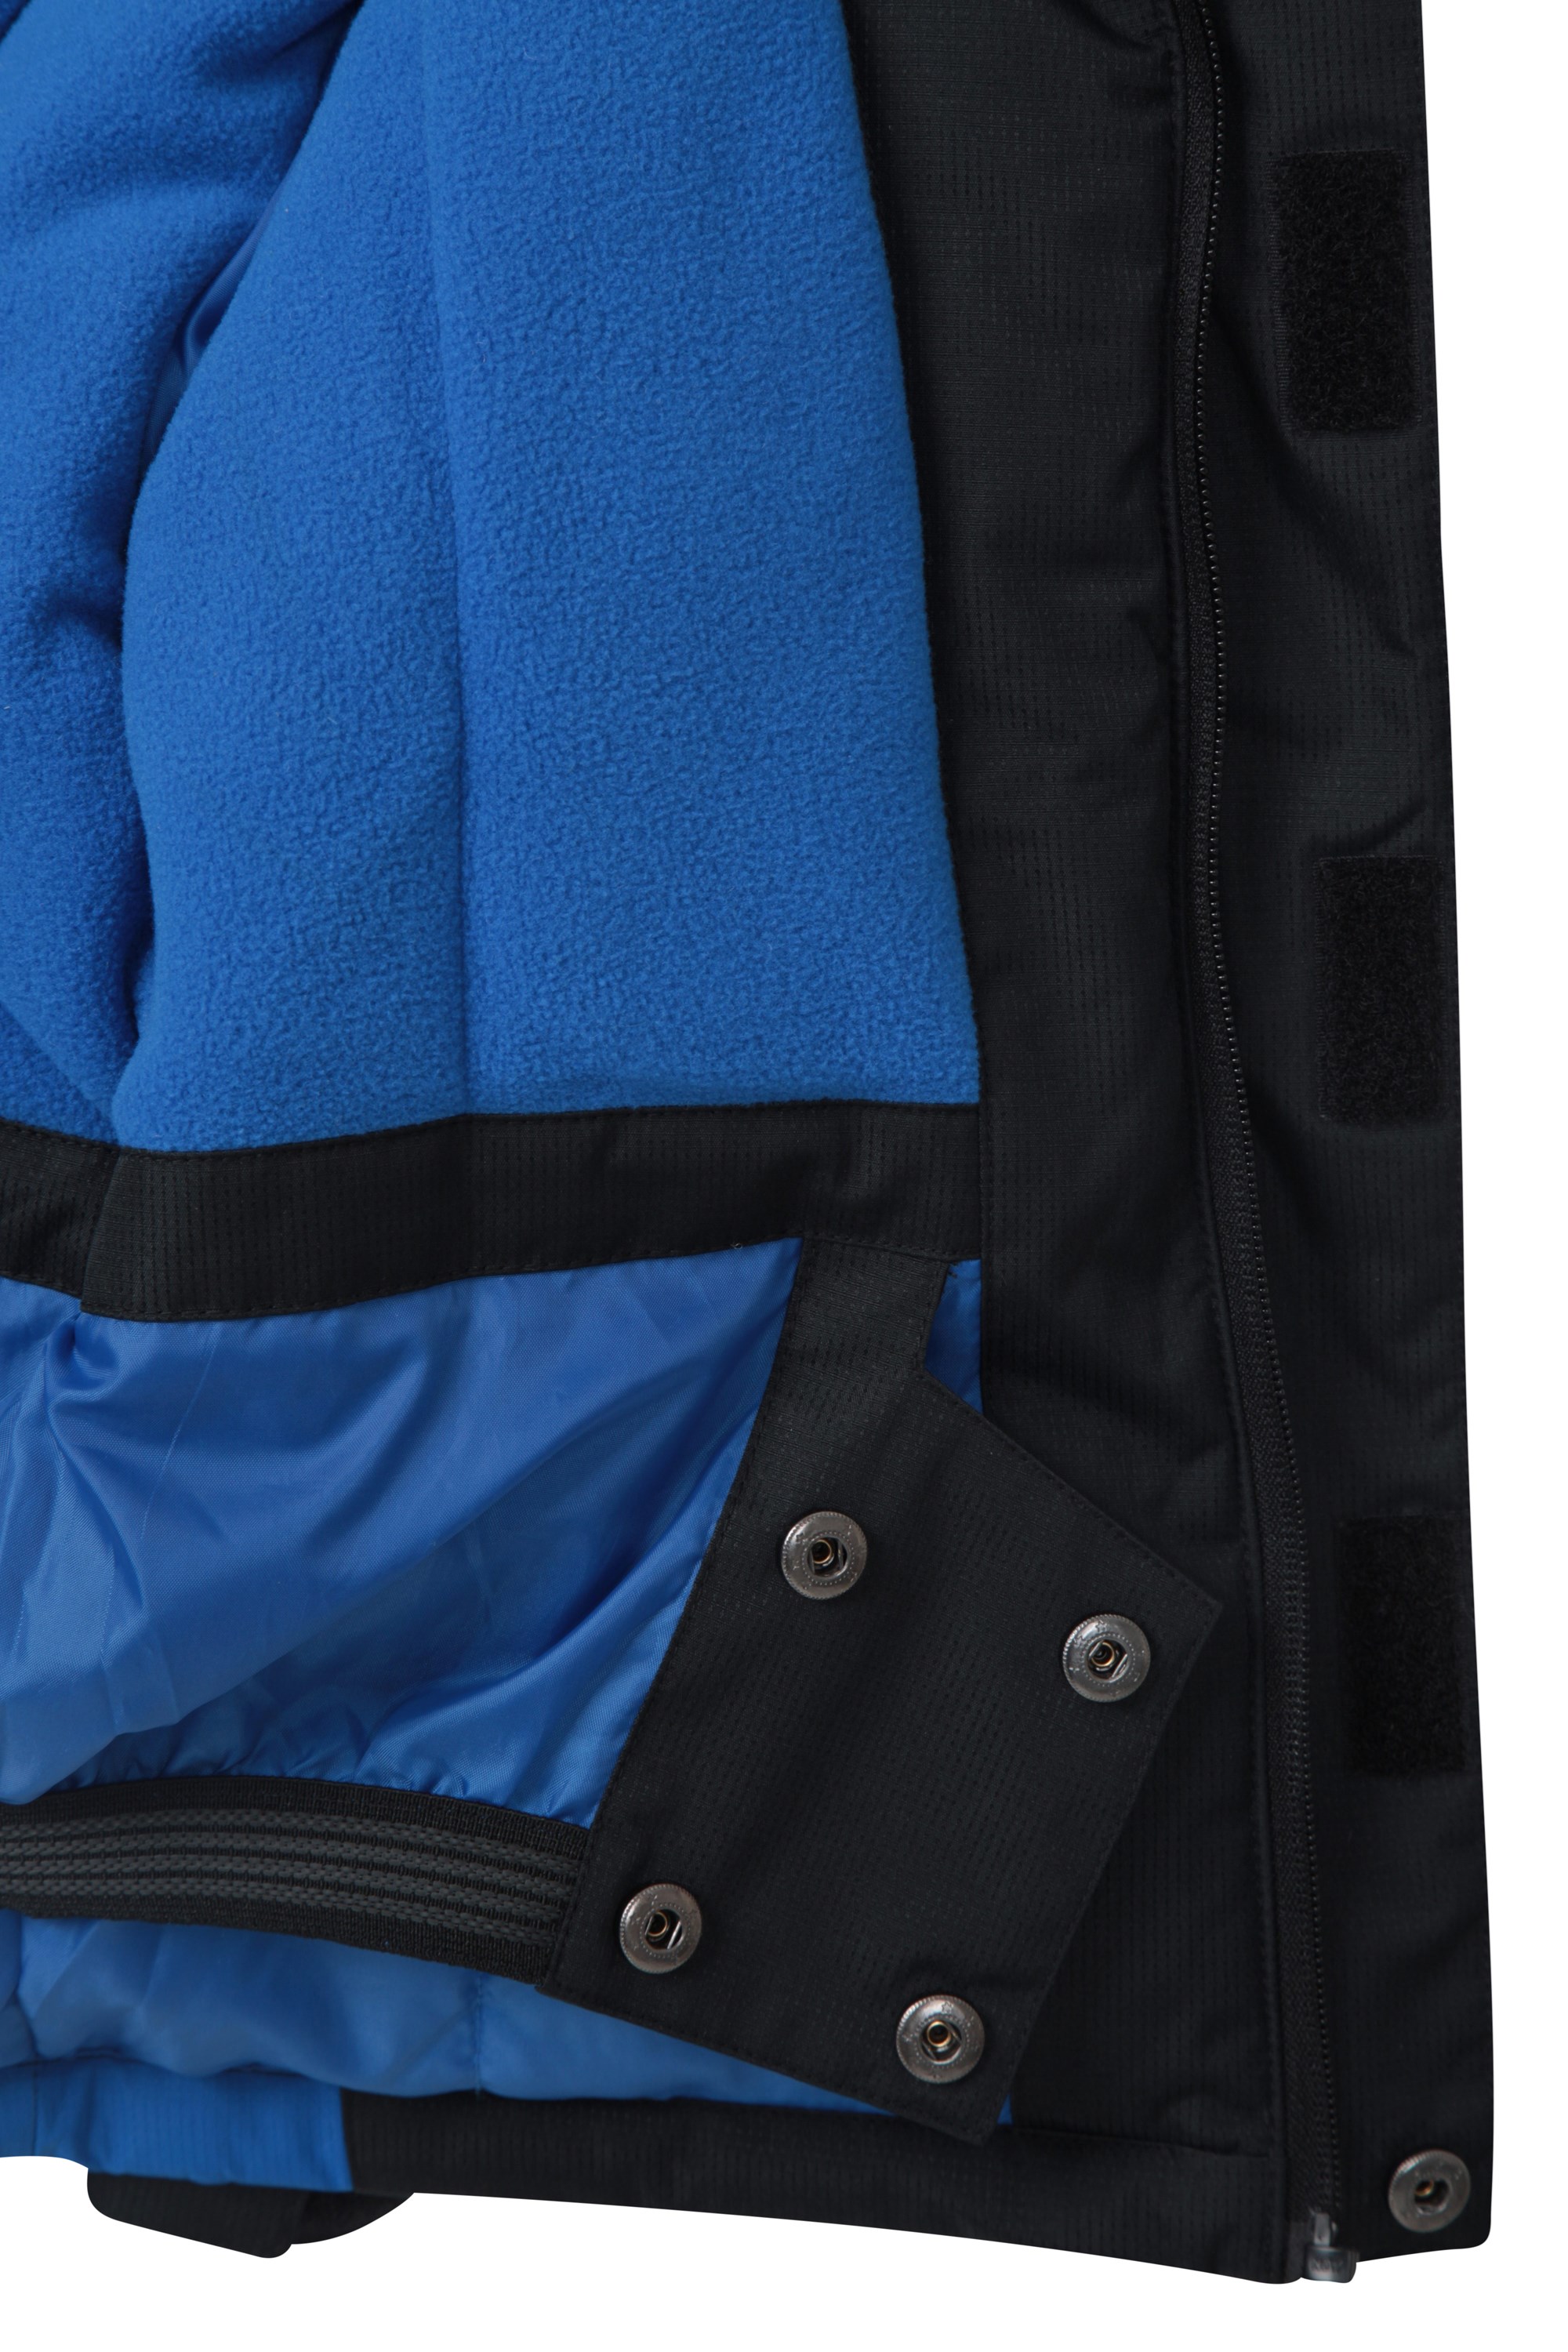 Doublure Polaire Jupe Pare-Neige intégrée YINGJIELIDE Veste de Ski Raptor Enfants Parfaite pour Le Camping en Hiver Manteau résistant à la Neige 